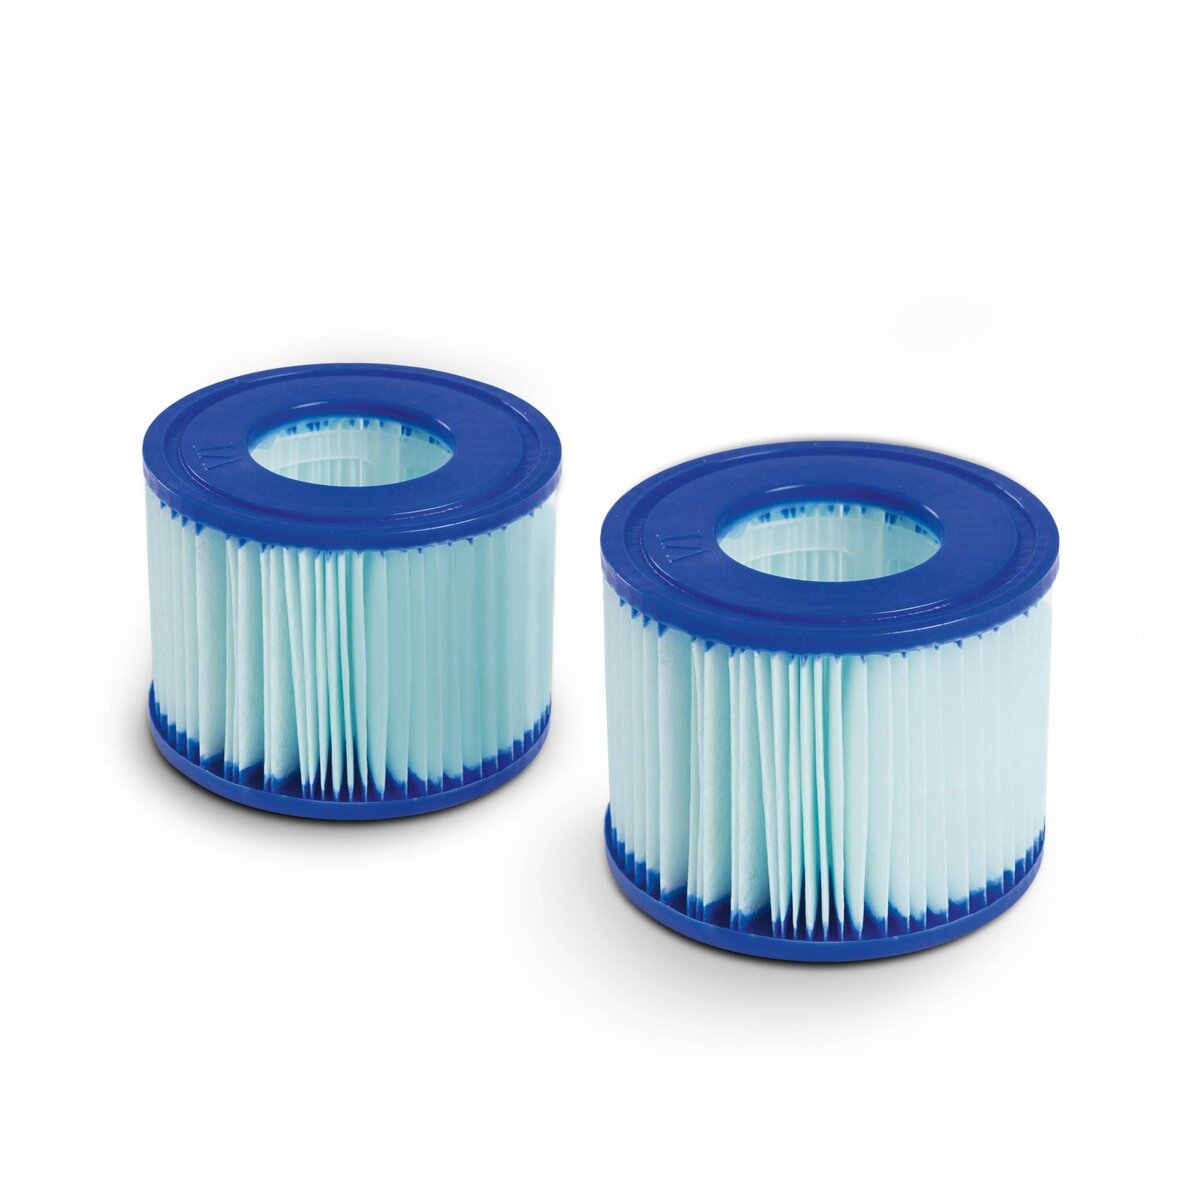 Alice's Garden Lot de 2 filtres antimicrobiens LAY-Z SPA pour spas gonflables – compatible avec SPA Milan – 2 cartouches filtrantes de remplacement pour spa gonflable LAY-Z SPA